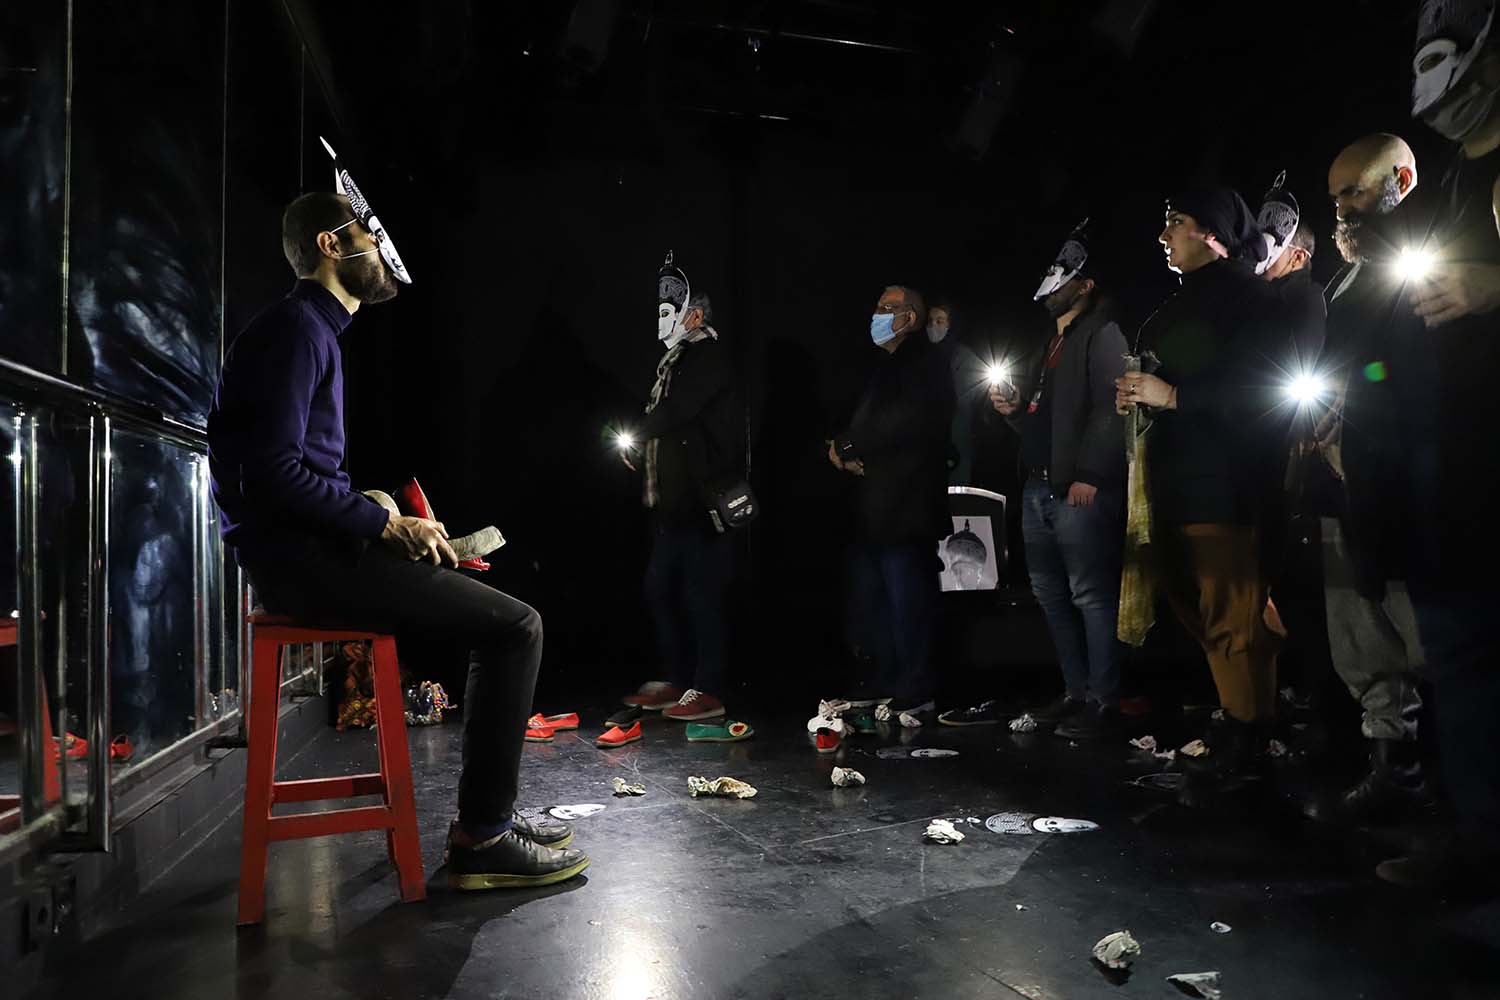 مروری بر نمایش های بخش دیگرگونه های اجرایی جشنواره فجر (6)

ایده های خلاق برای غافلگیری های جذاب